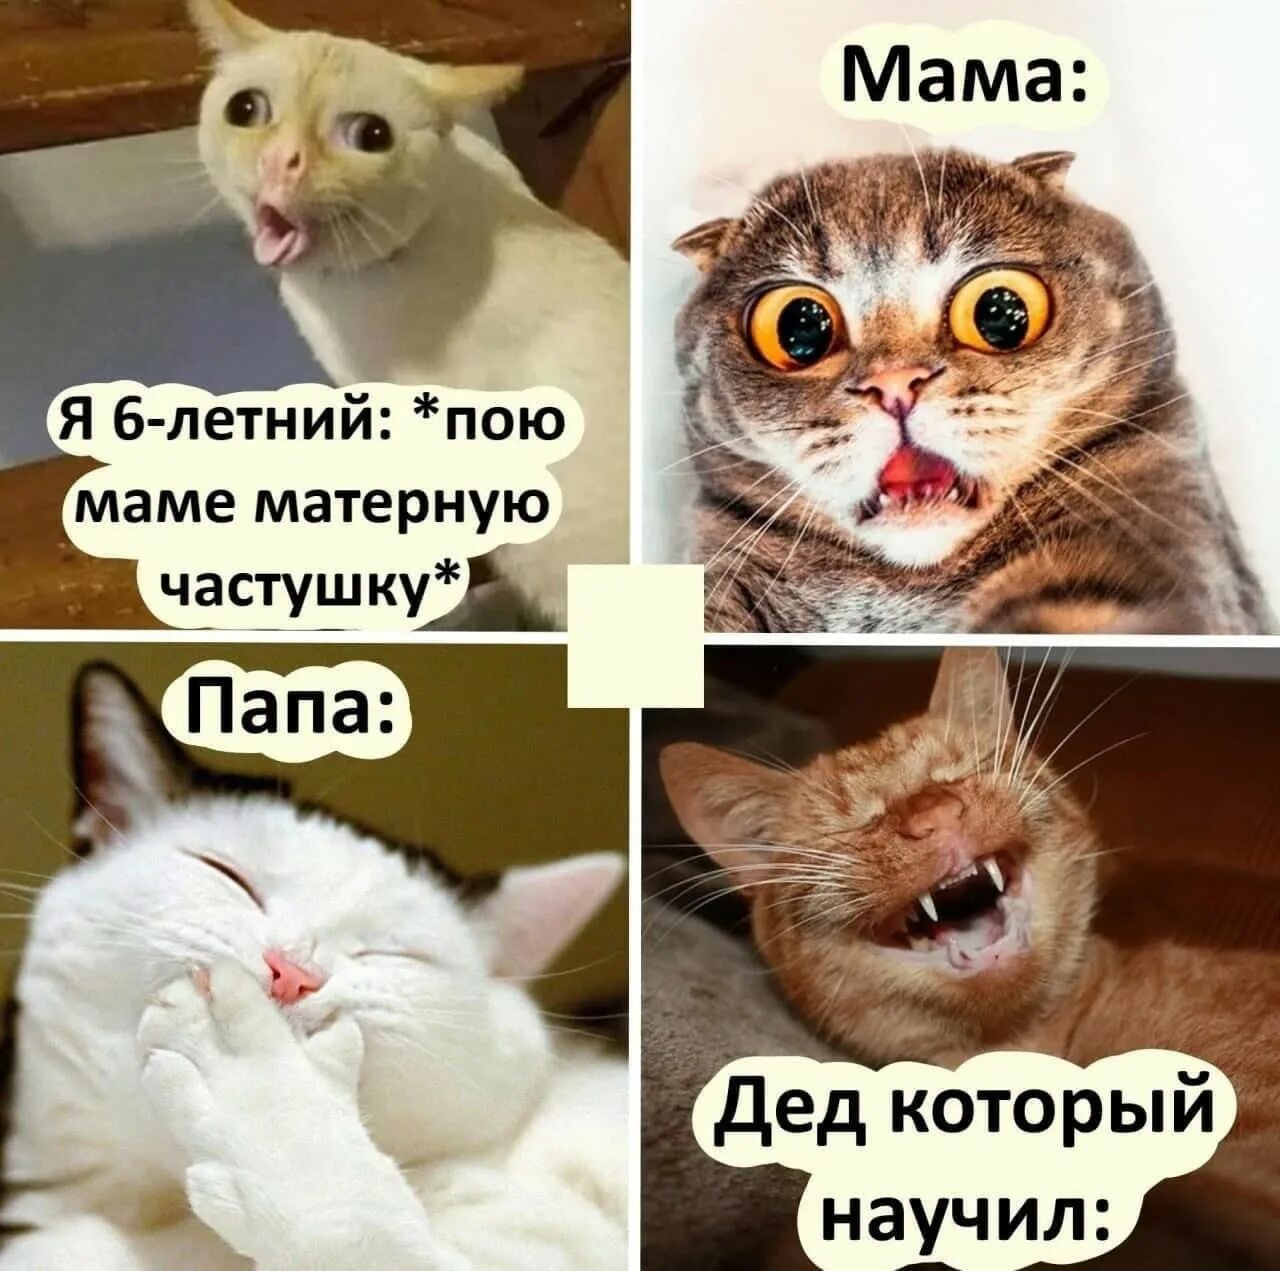 Матерные мемы с котами. Коты мемы 2021. Я пою матерную частушку. Я для мамочки пою